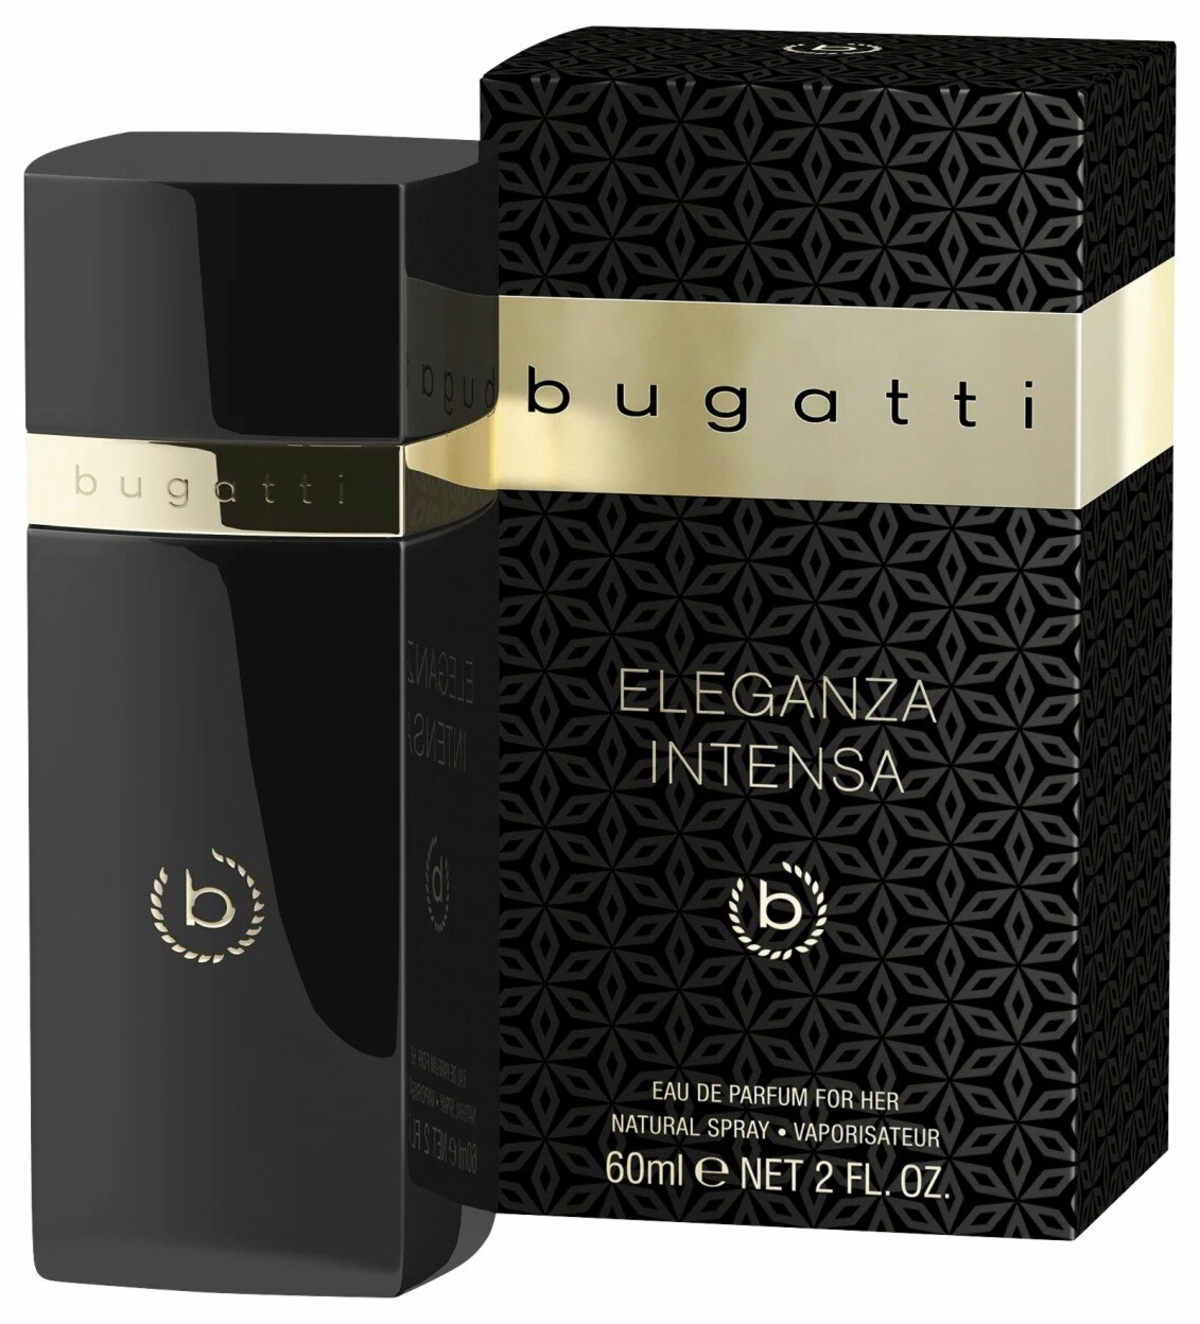 New Fruity-creamy Fragrances From Bugatti Fashion: 